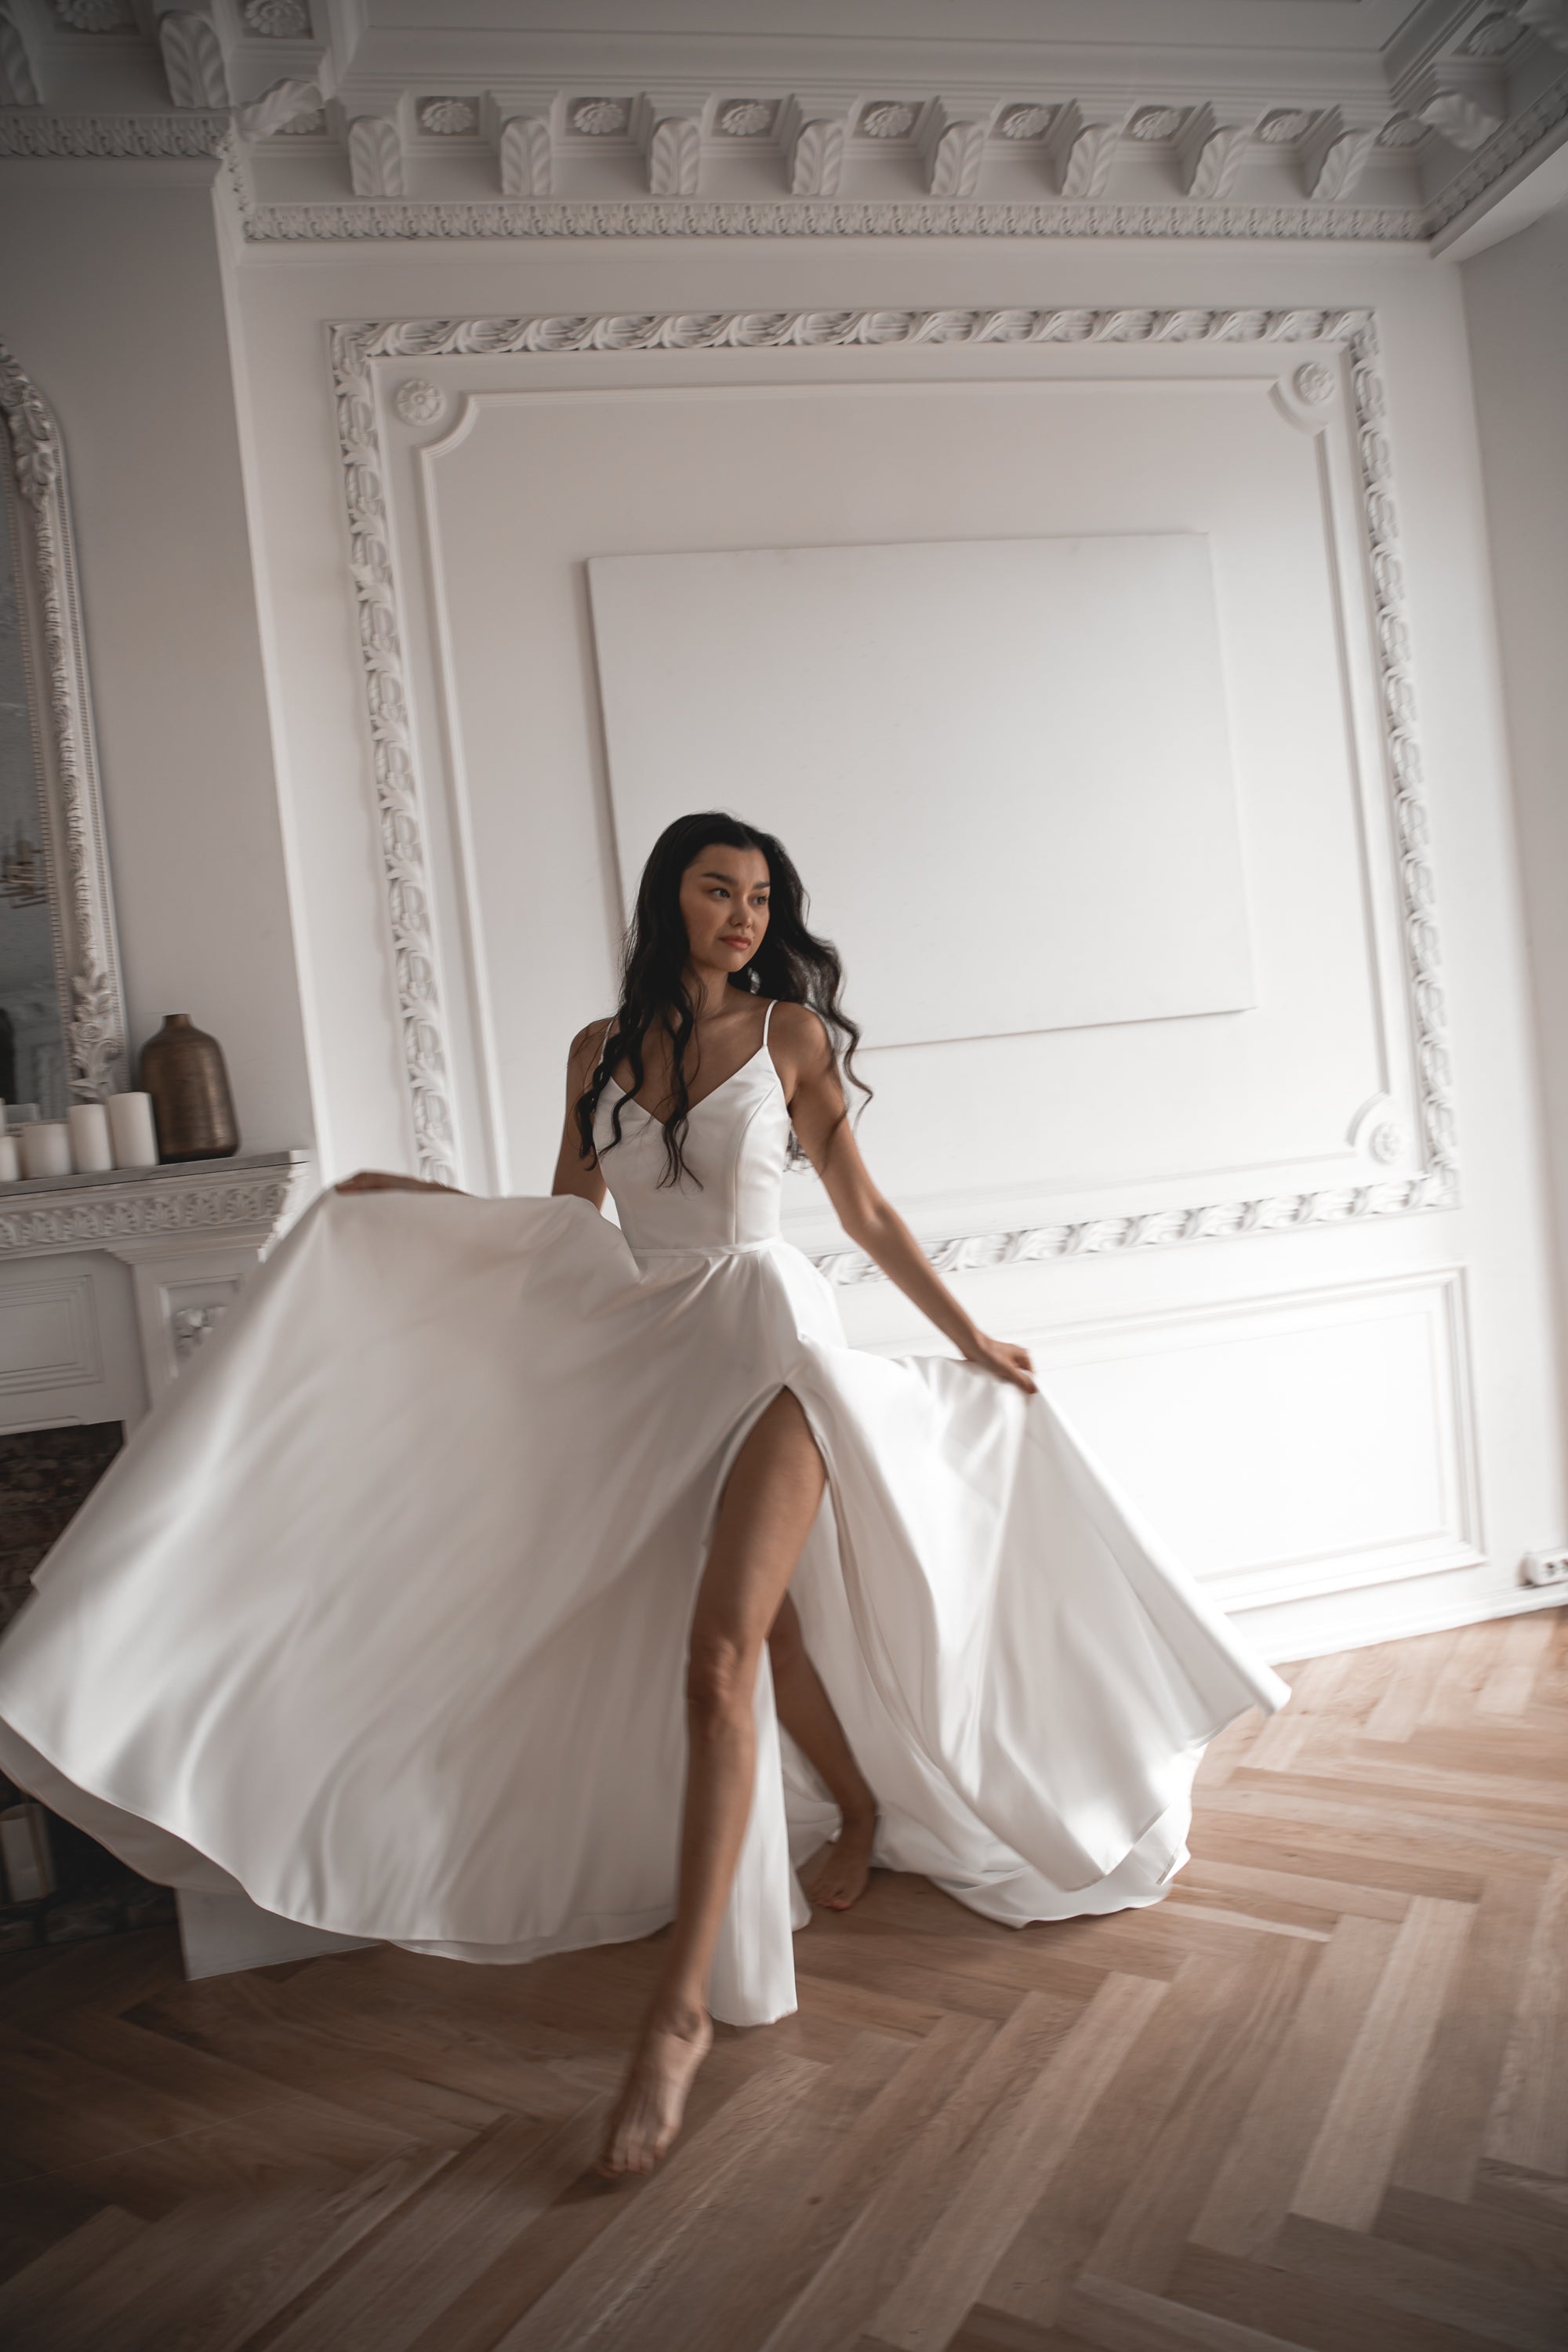 Affordable Wedding Dresses Under $500  Online Bridal Shop – Olivia Bottega